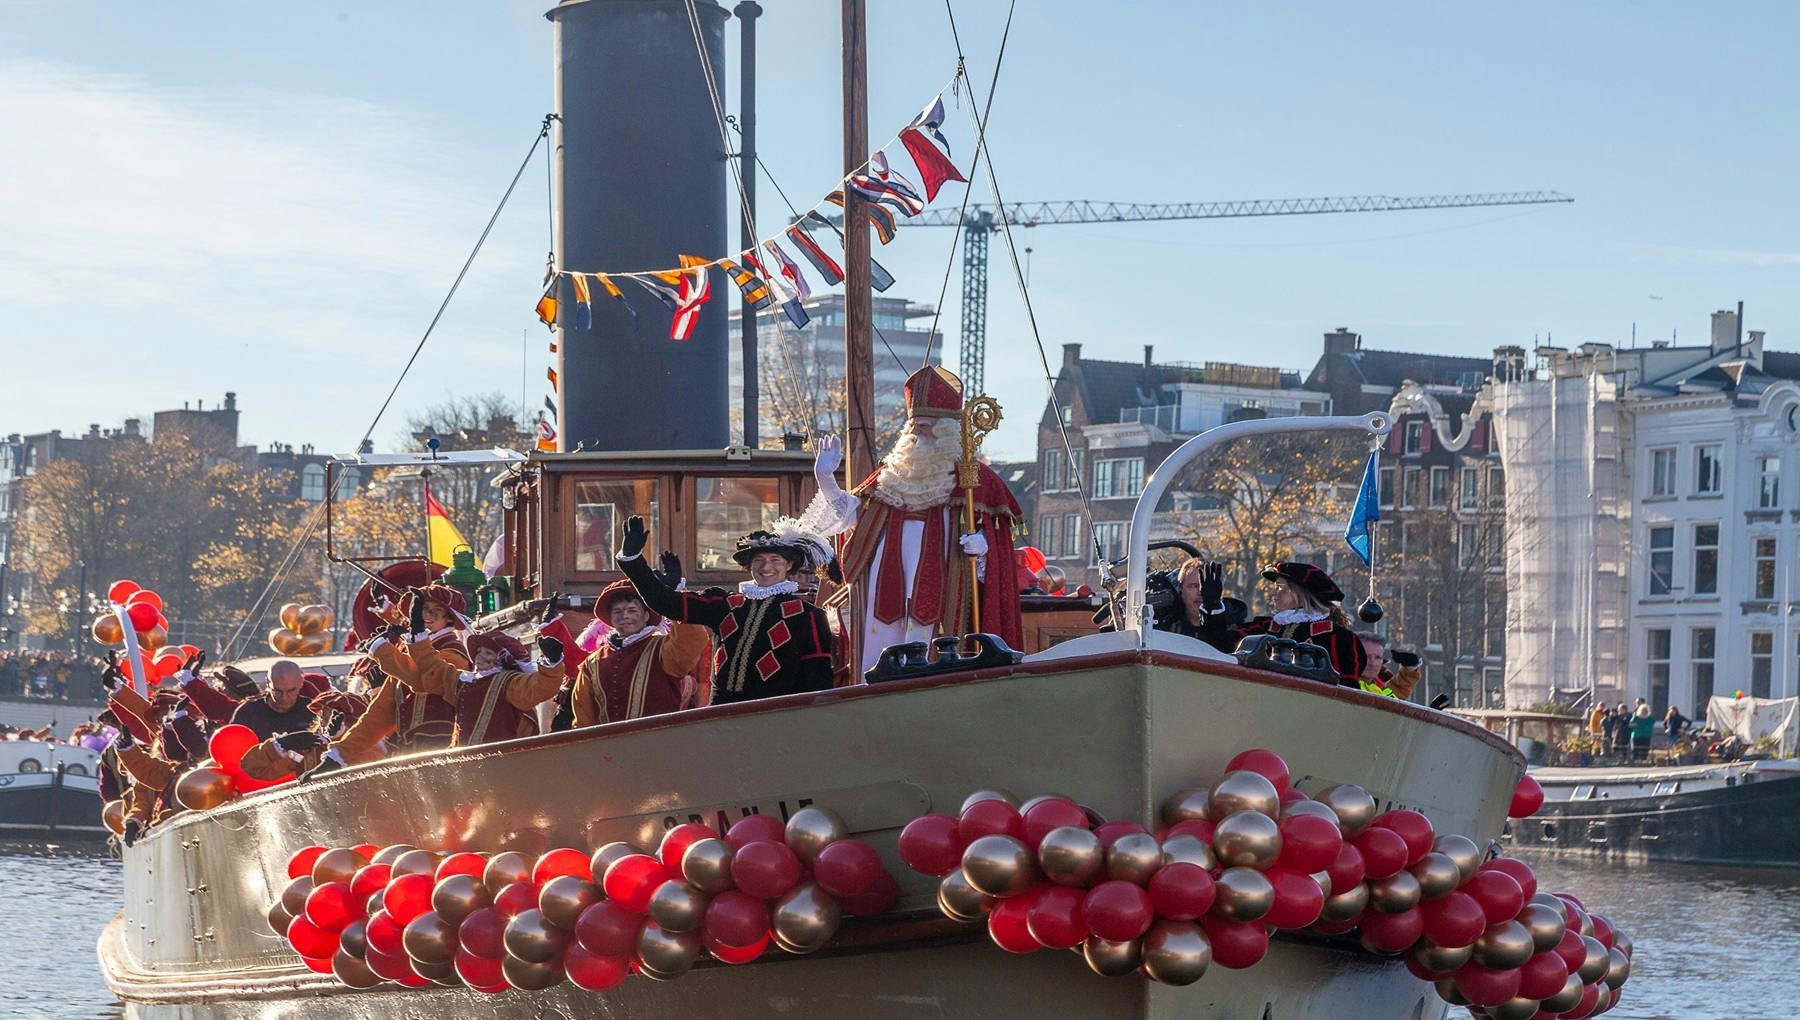 Arrival of Sinterklaas